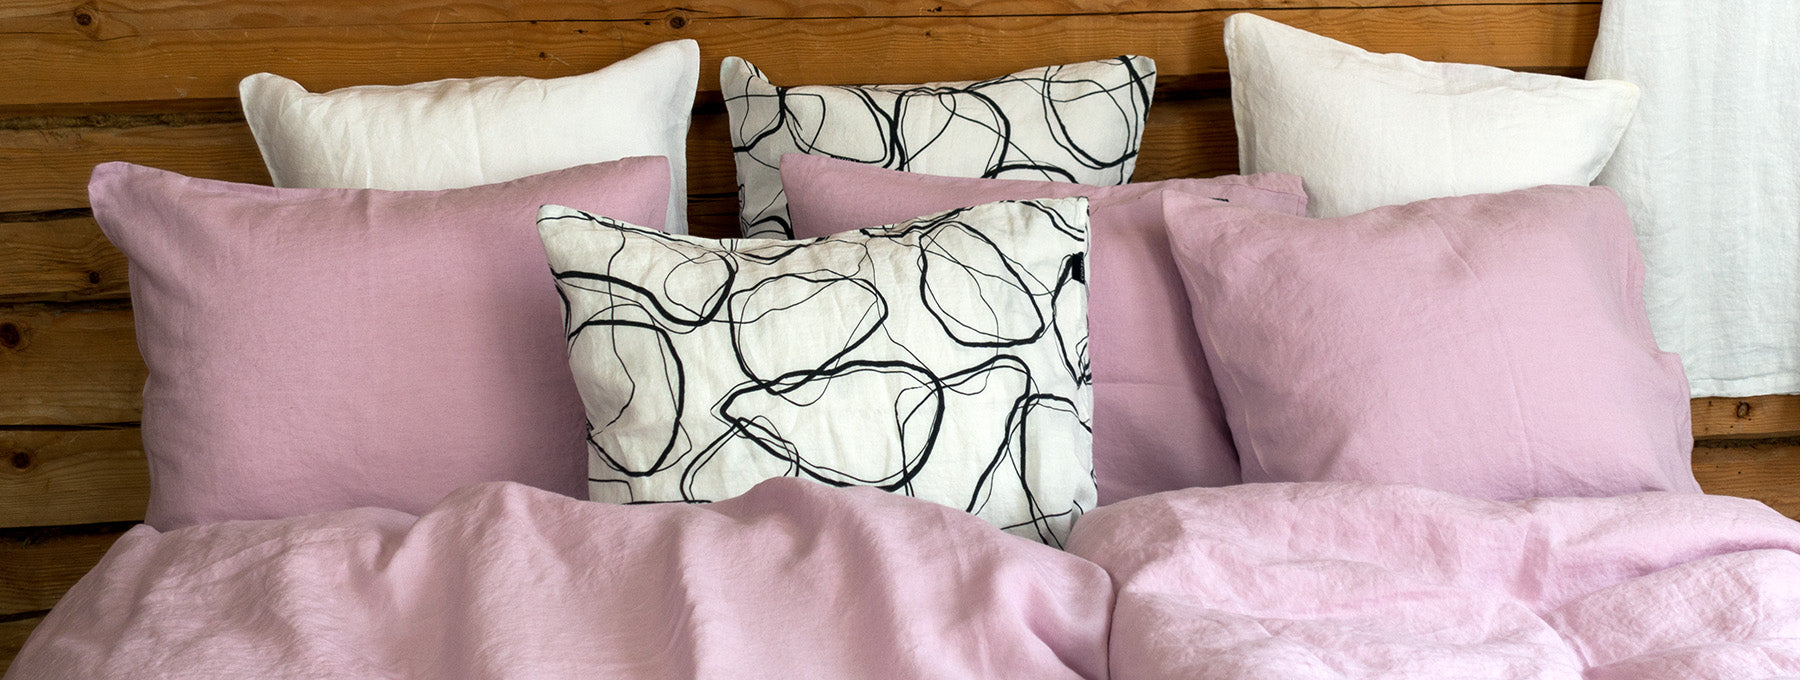 Vaaleanpunaisia tyynyjä sängyn päädyssä nojaamassa hirsiseinään